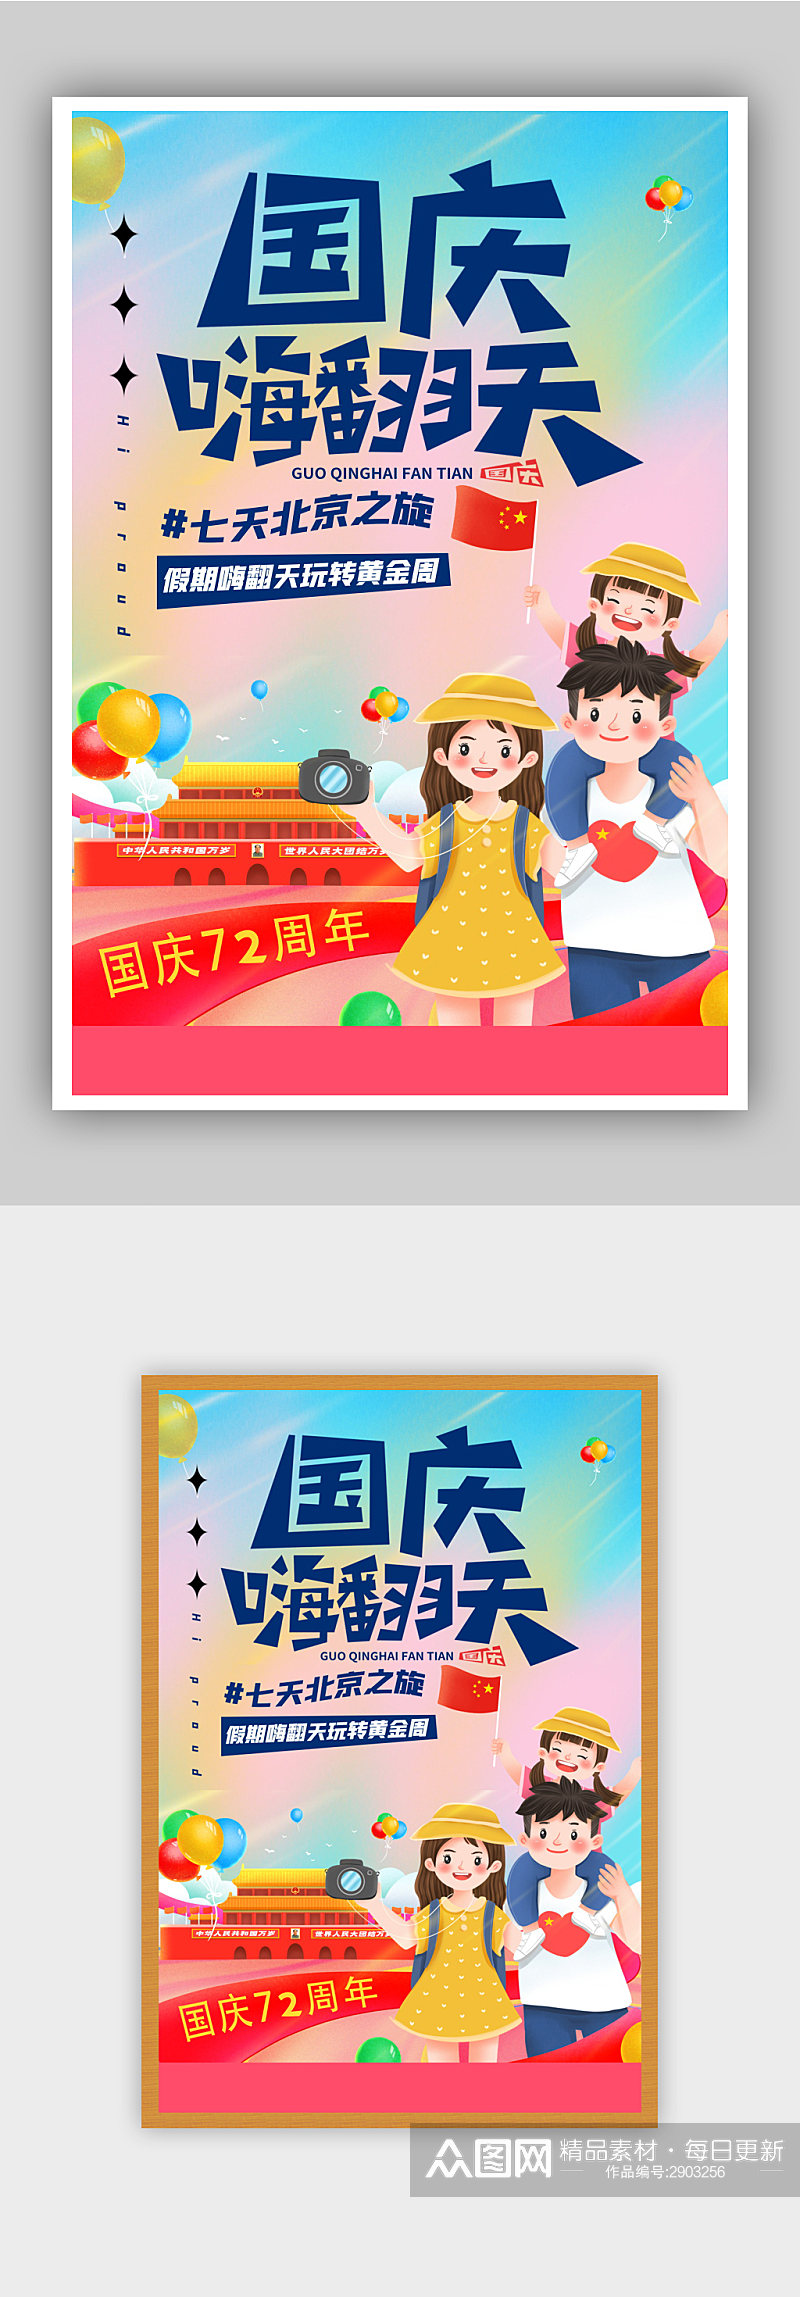 十一国庆旅游季北京旅行海报素材